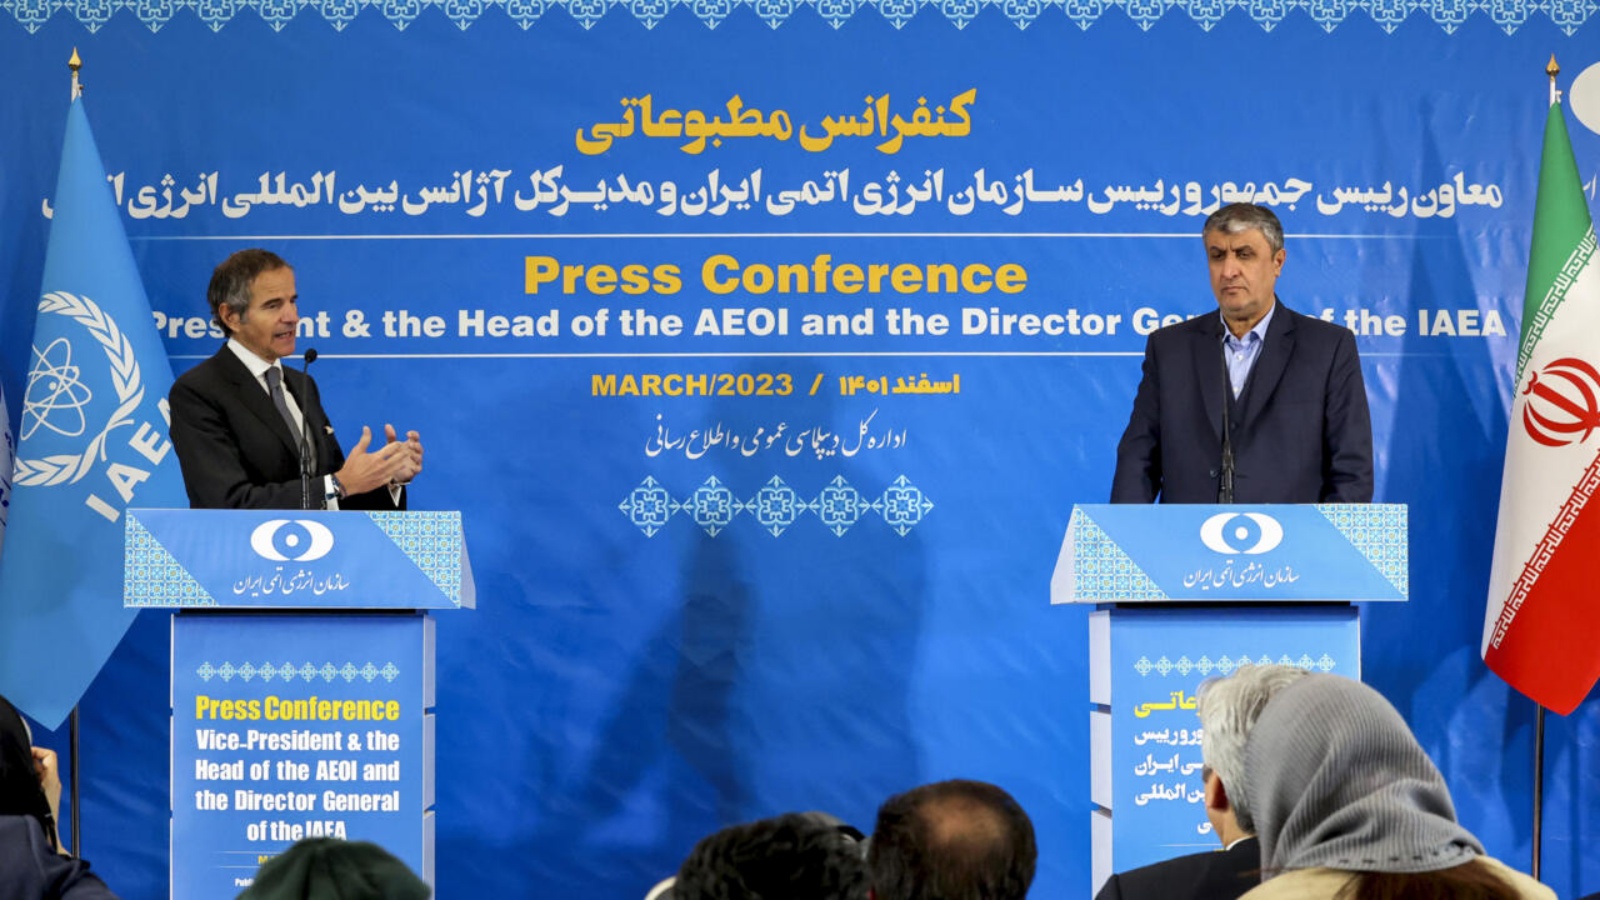 مدير عام الوكالة الدولية للطاقة الذرية رافايل غروسي (يسار) متحدثا في مؤتمر صحافي مشترك مع مدير منظمة الطاقة الذرية الإيرانية محمد إسلامي في طهران السبت في 4 مارس 2023 